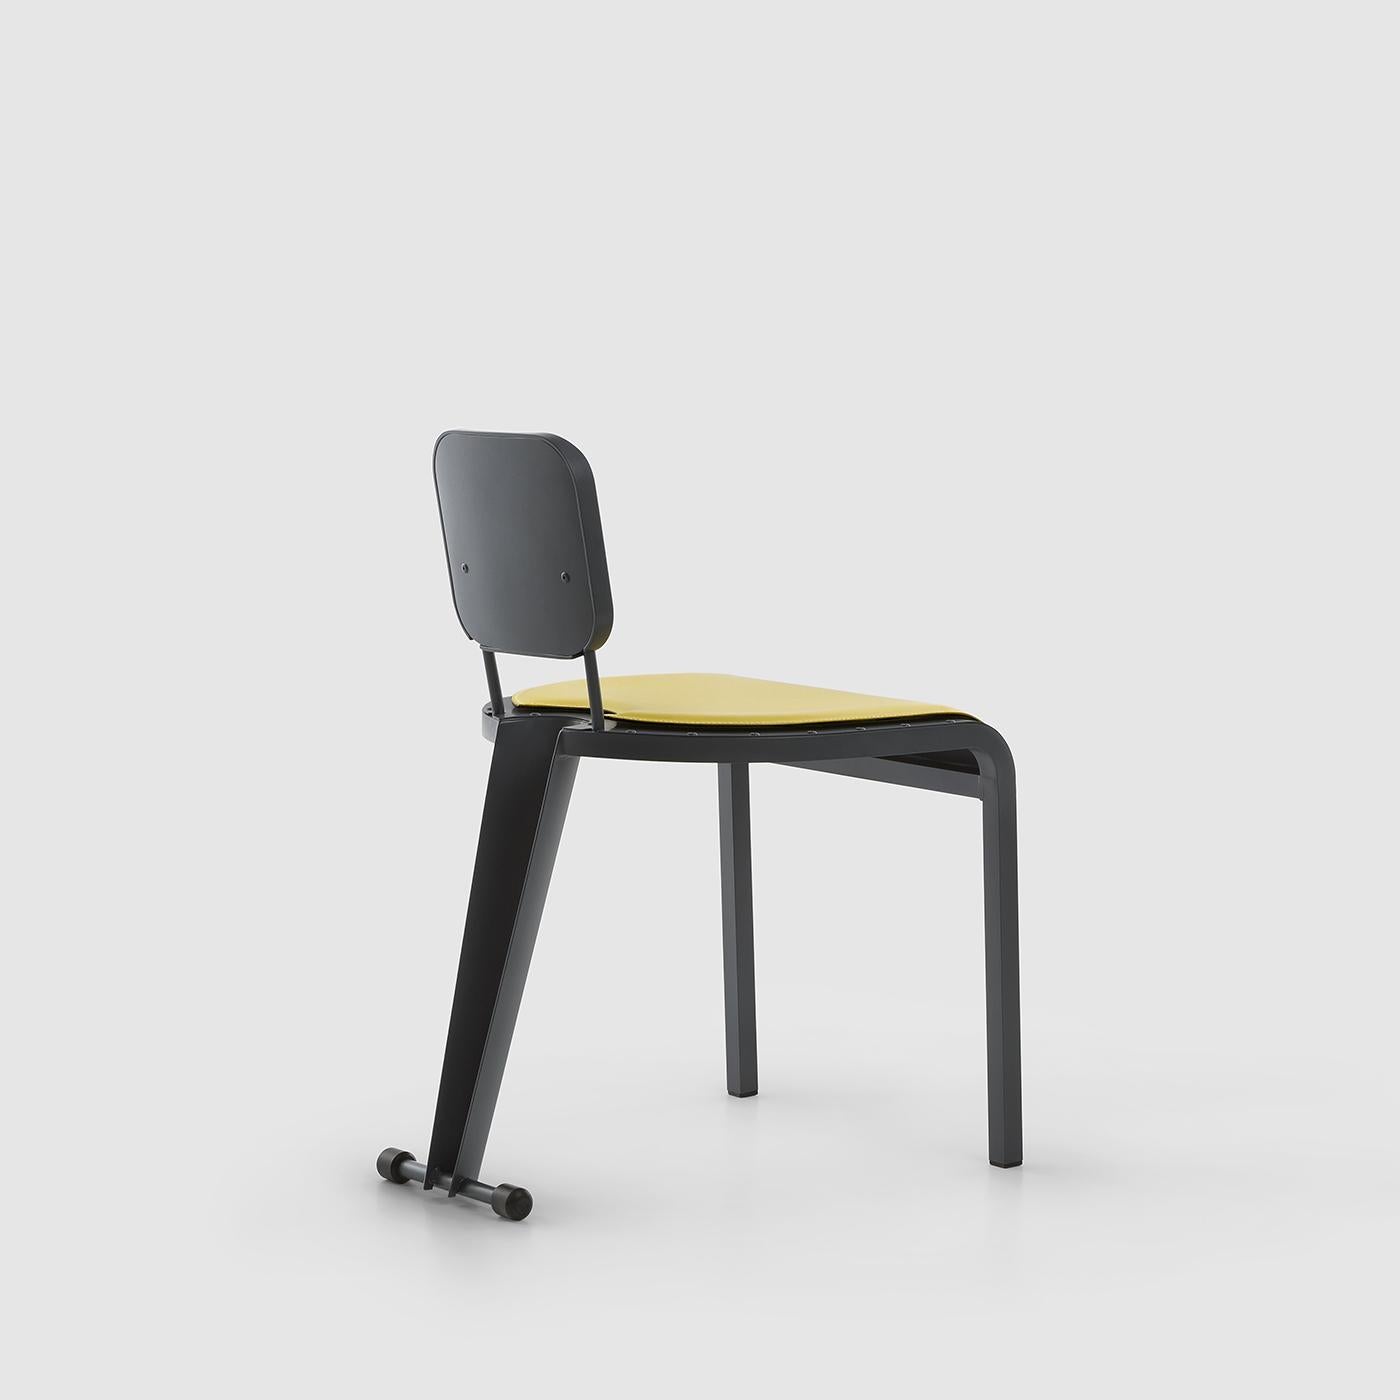 Véritable vitrine de l'artisanat, cette chaise se distingue par sa combinaison unique de couleurs, de matériaux et sa silhouette ergonomique. Parfaite aussi bien pour un studio privé que pour un intérieur commercial, cette pièce est entièrement